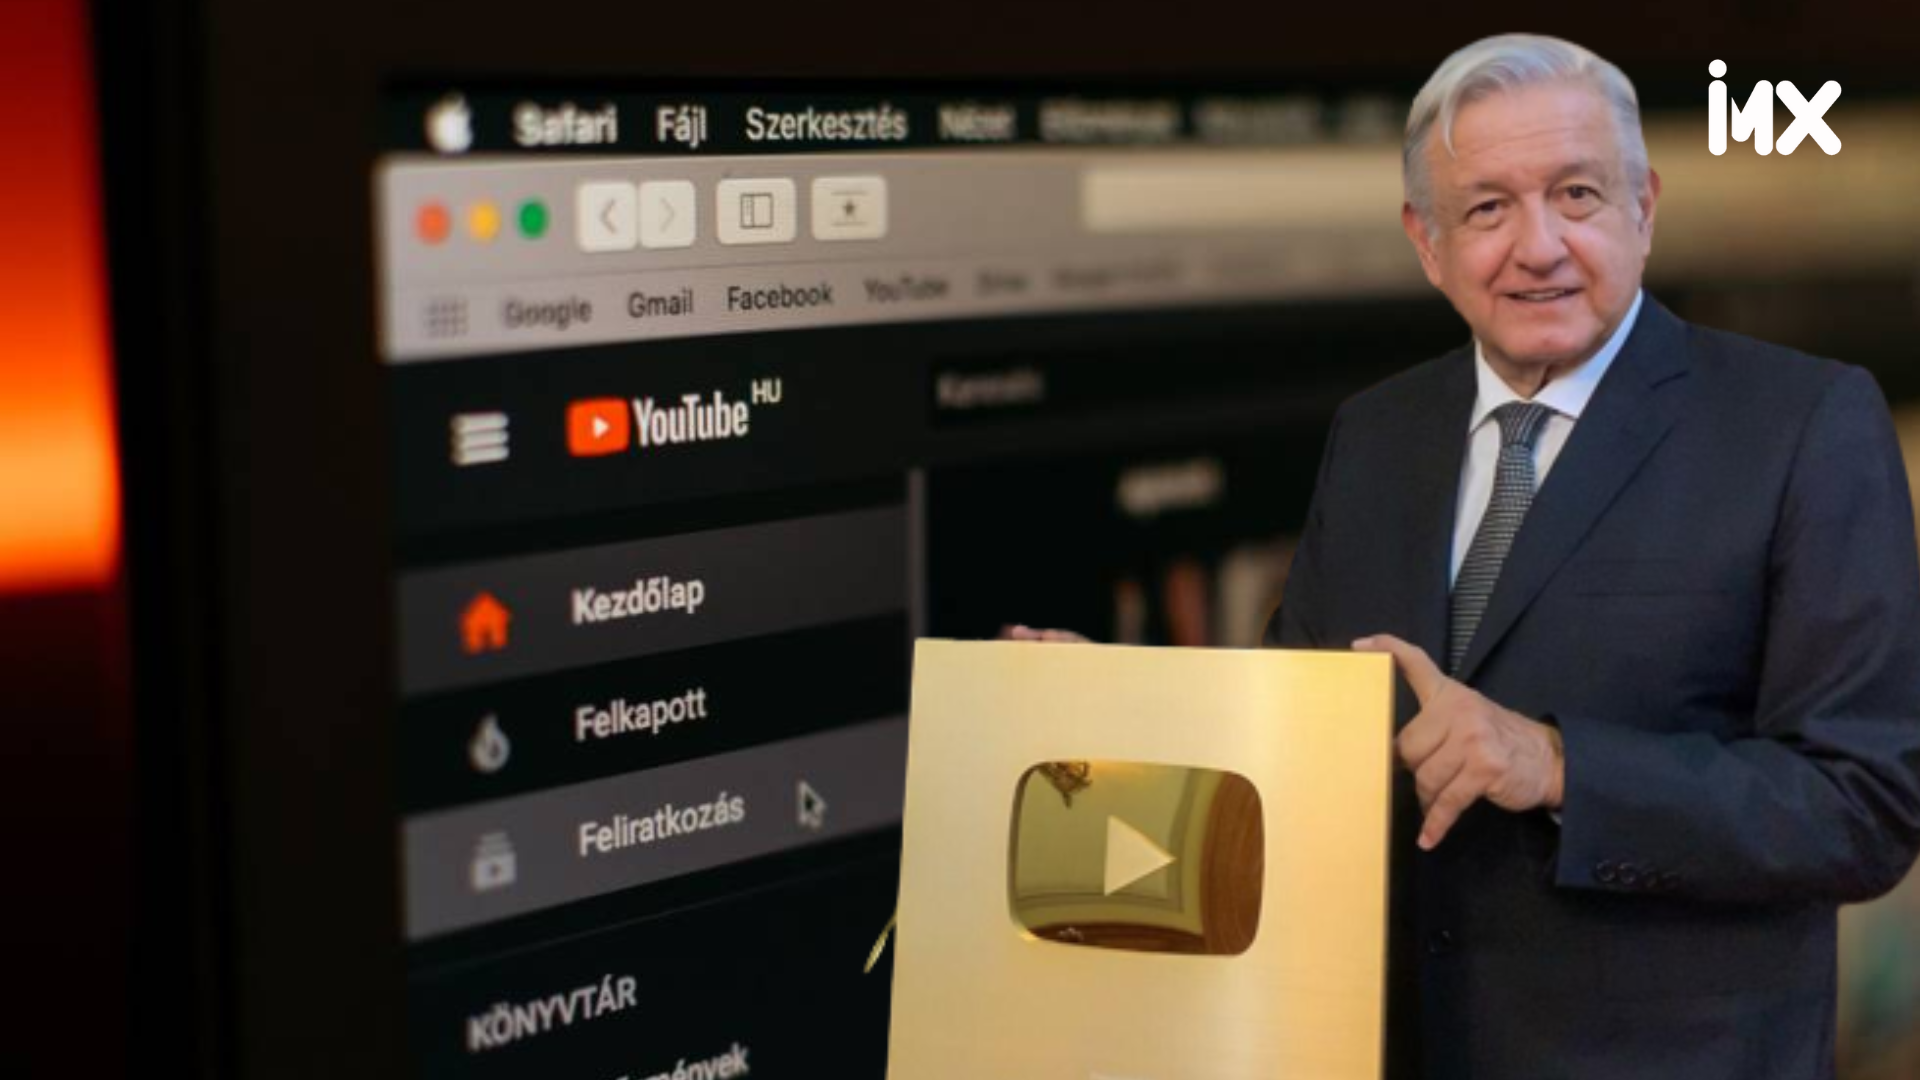 YouTube, la herramienta digital que le ha ayudado a AMLO a marcar la agenda política.